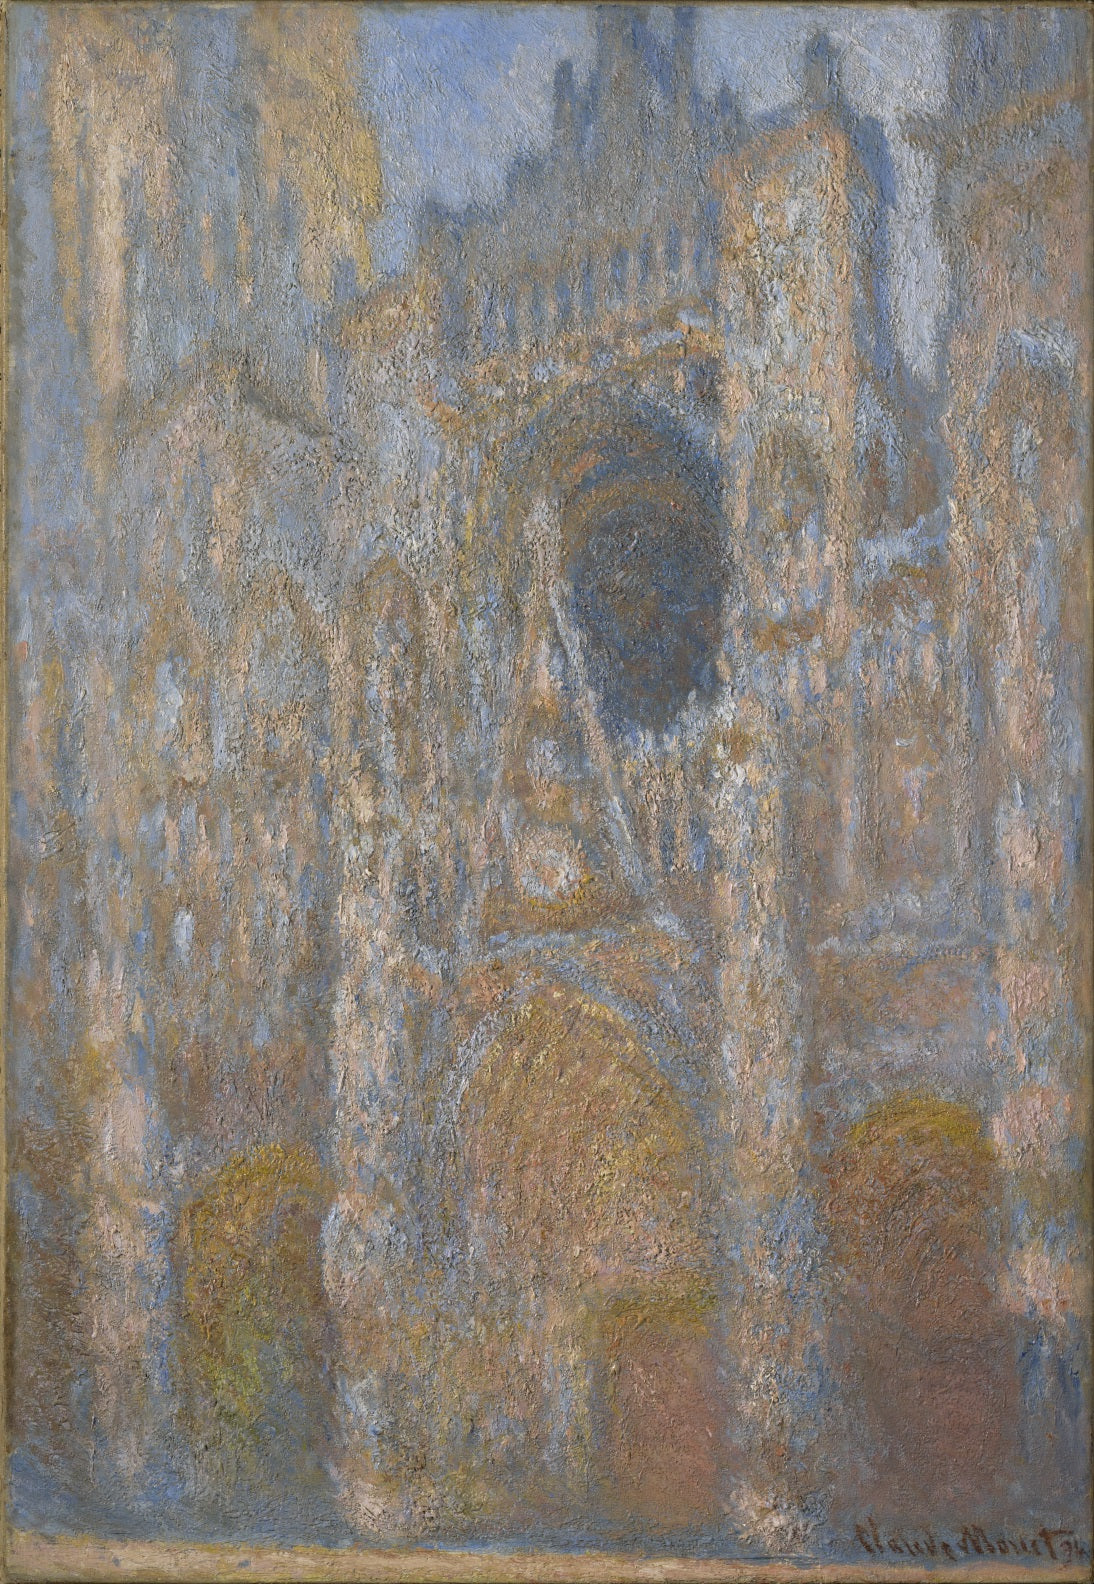 La Façade de la cathédrale de Rouen au soleil (W1358) - Claude Monet